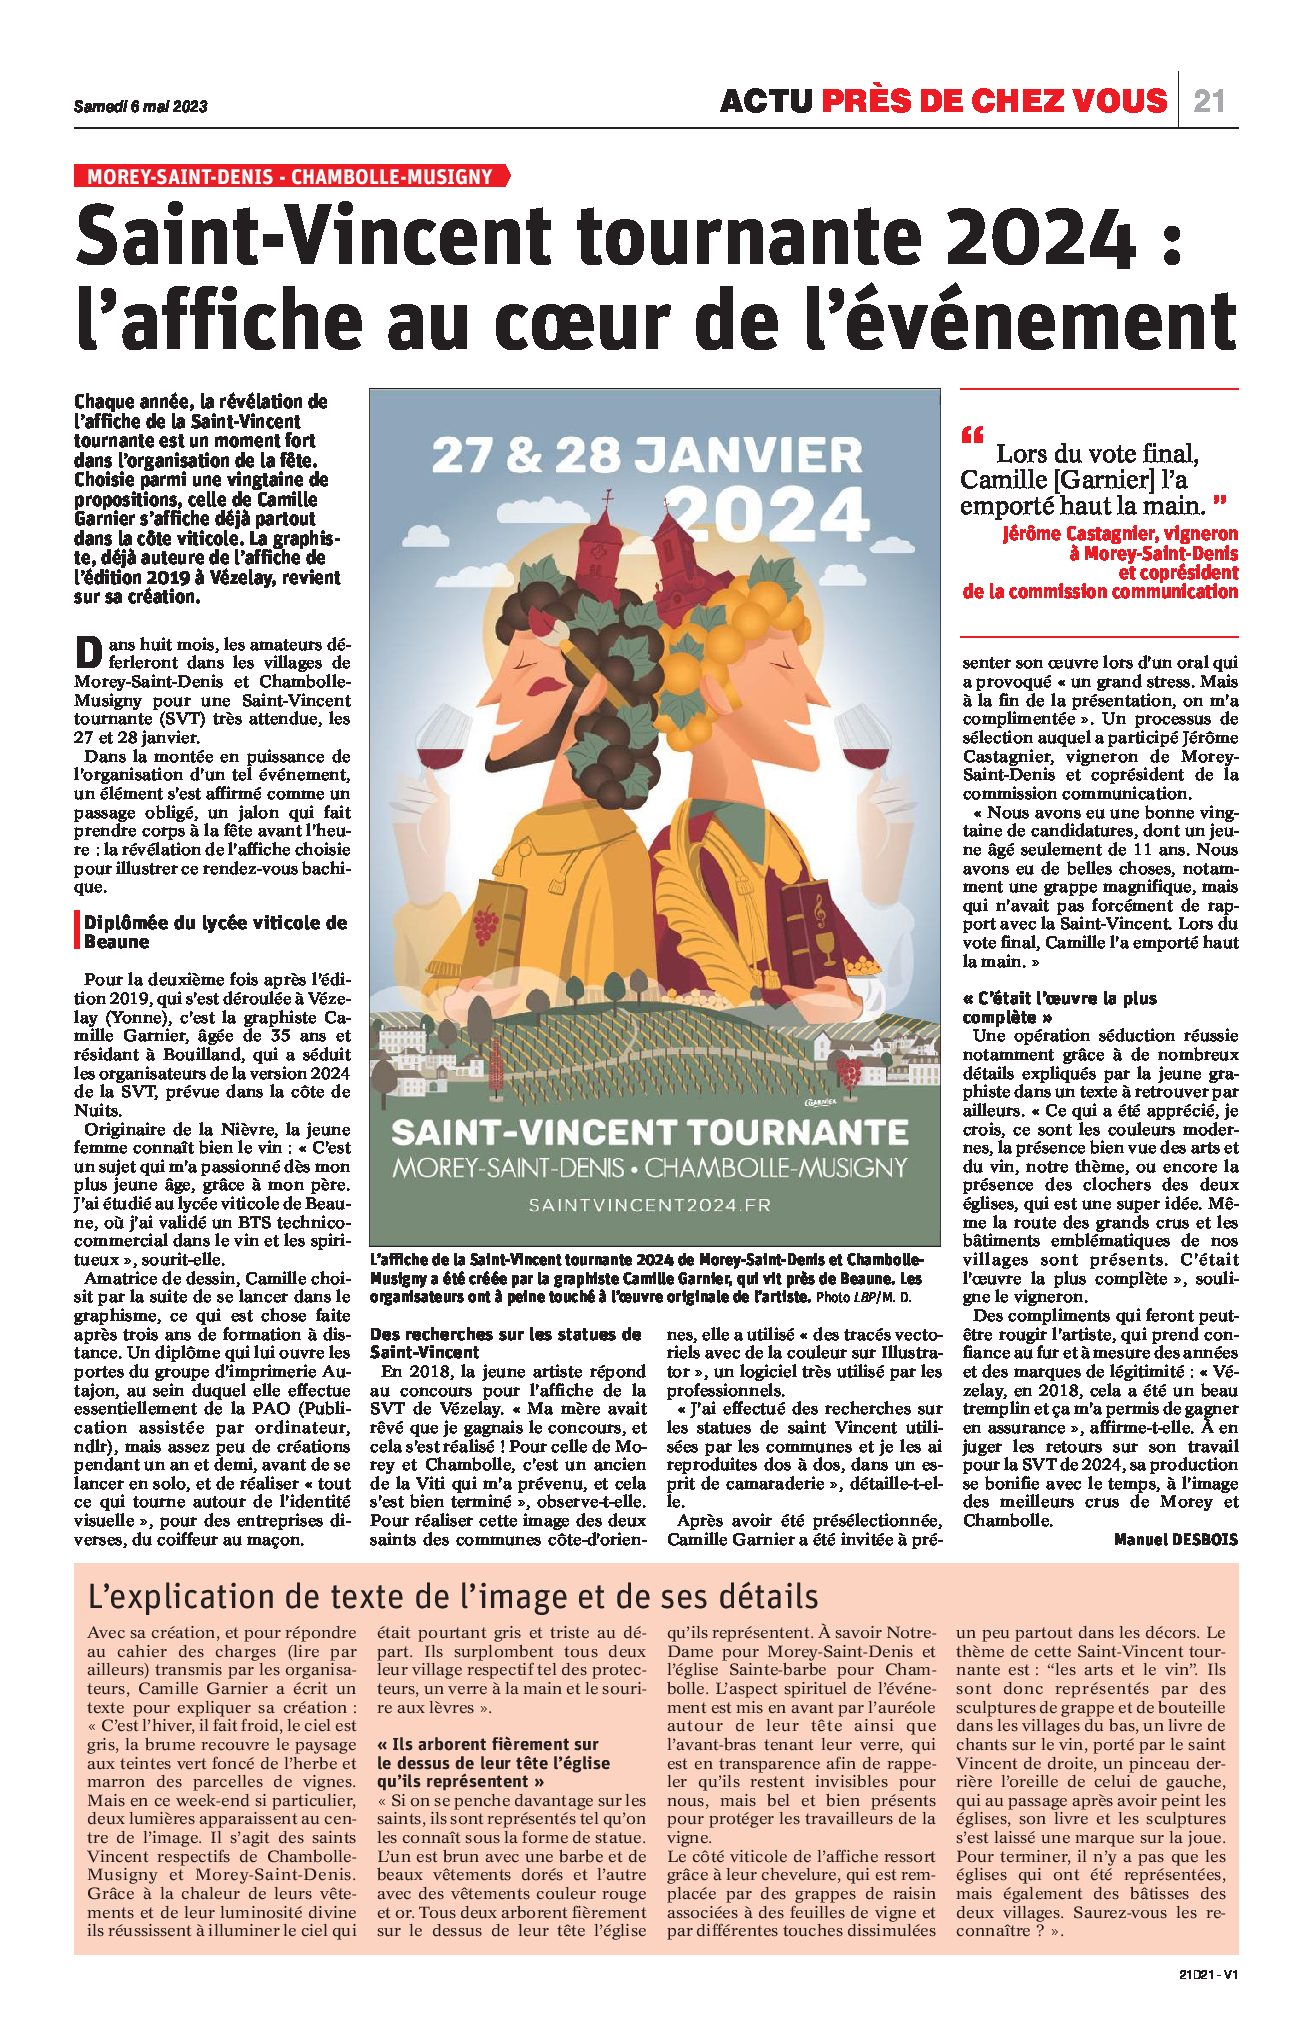 Actualités SaintVincent Tournante 2024